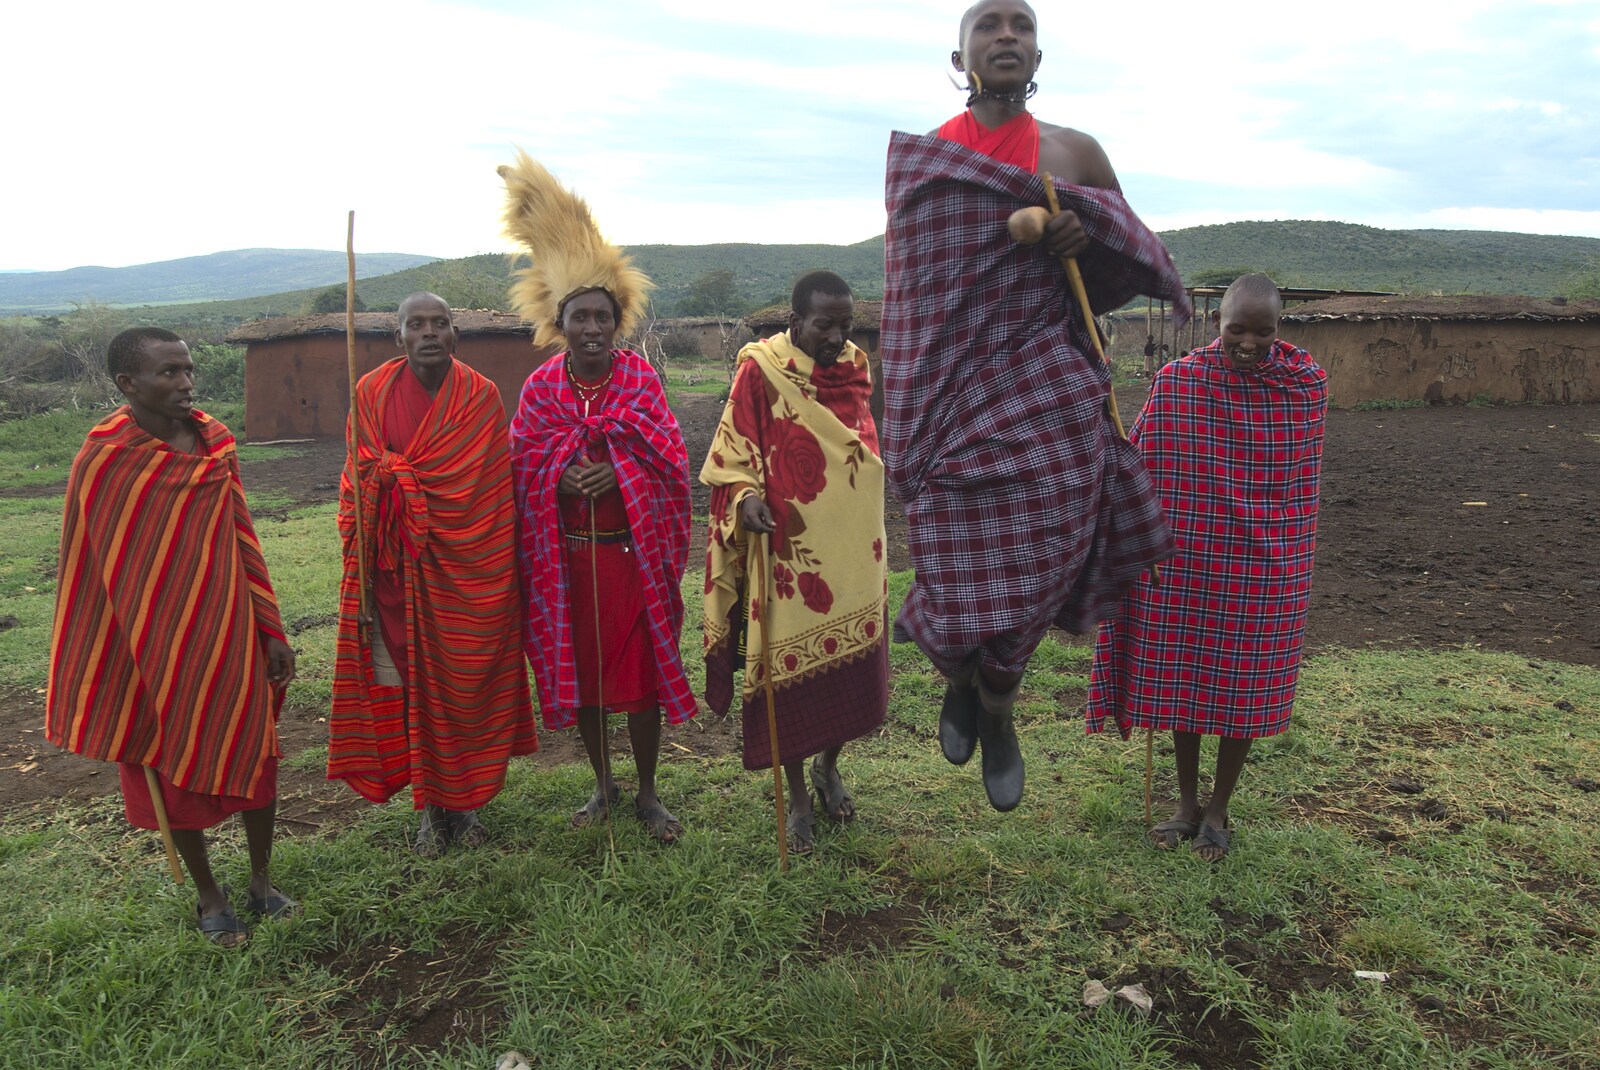 Maasai Mara Safari and a Maasai Village, Ololaimutia, Kenya - 5th November 2010: Jumping is part of the wedding ritual